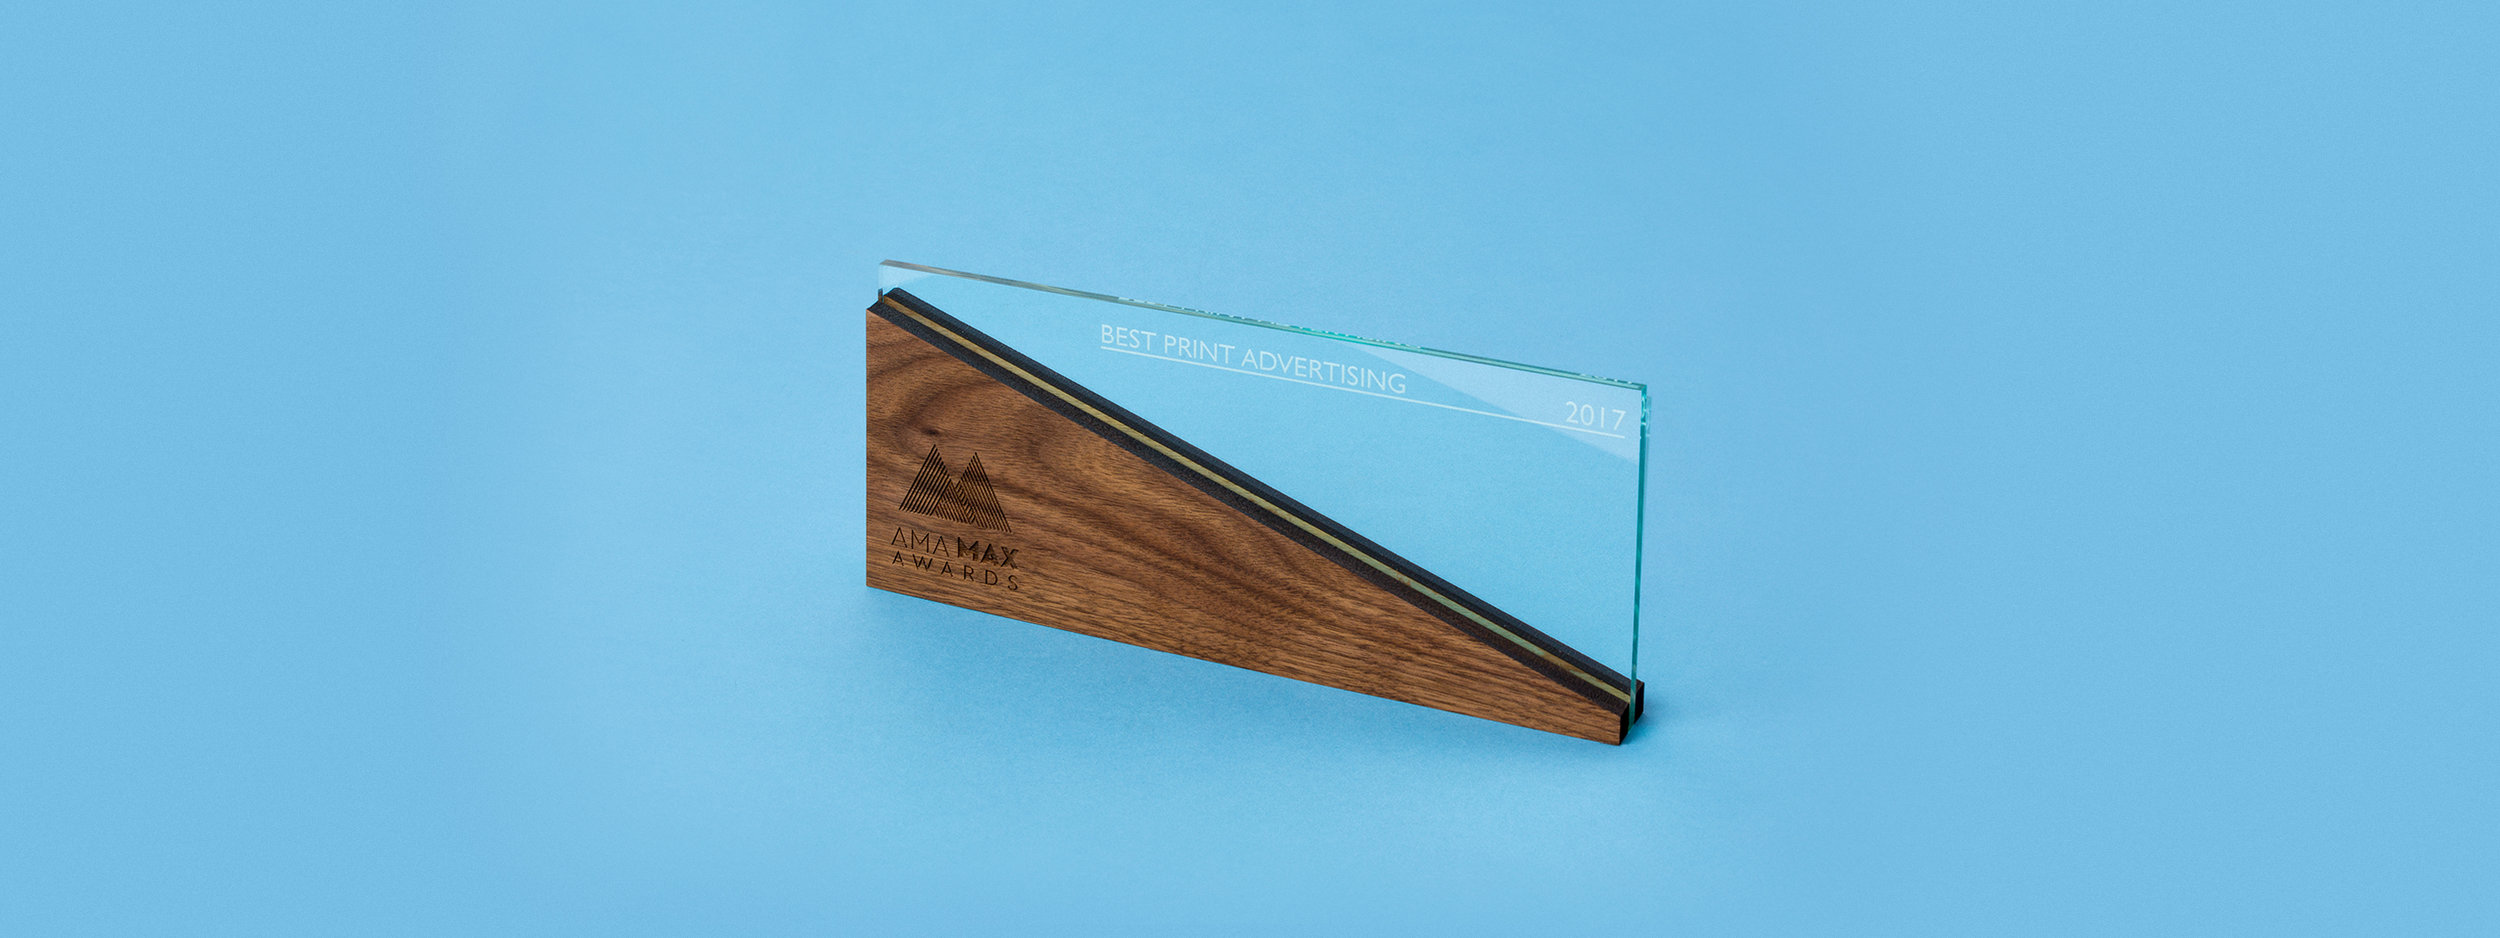 custom award, trophy, design, laser cut acrylic, laser cut wood, engraved wood, engraved green edge acrylic, portland, OR